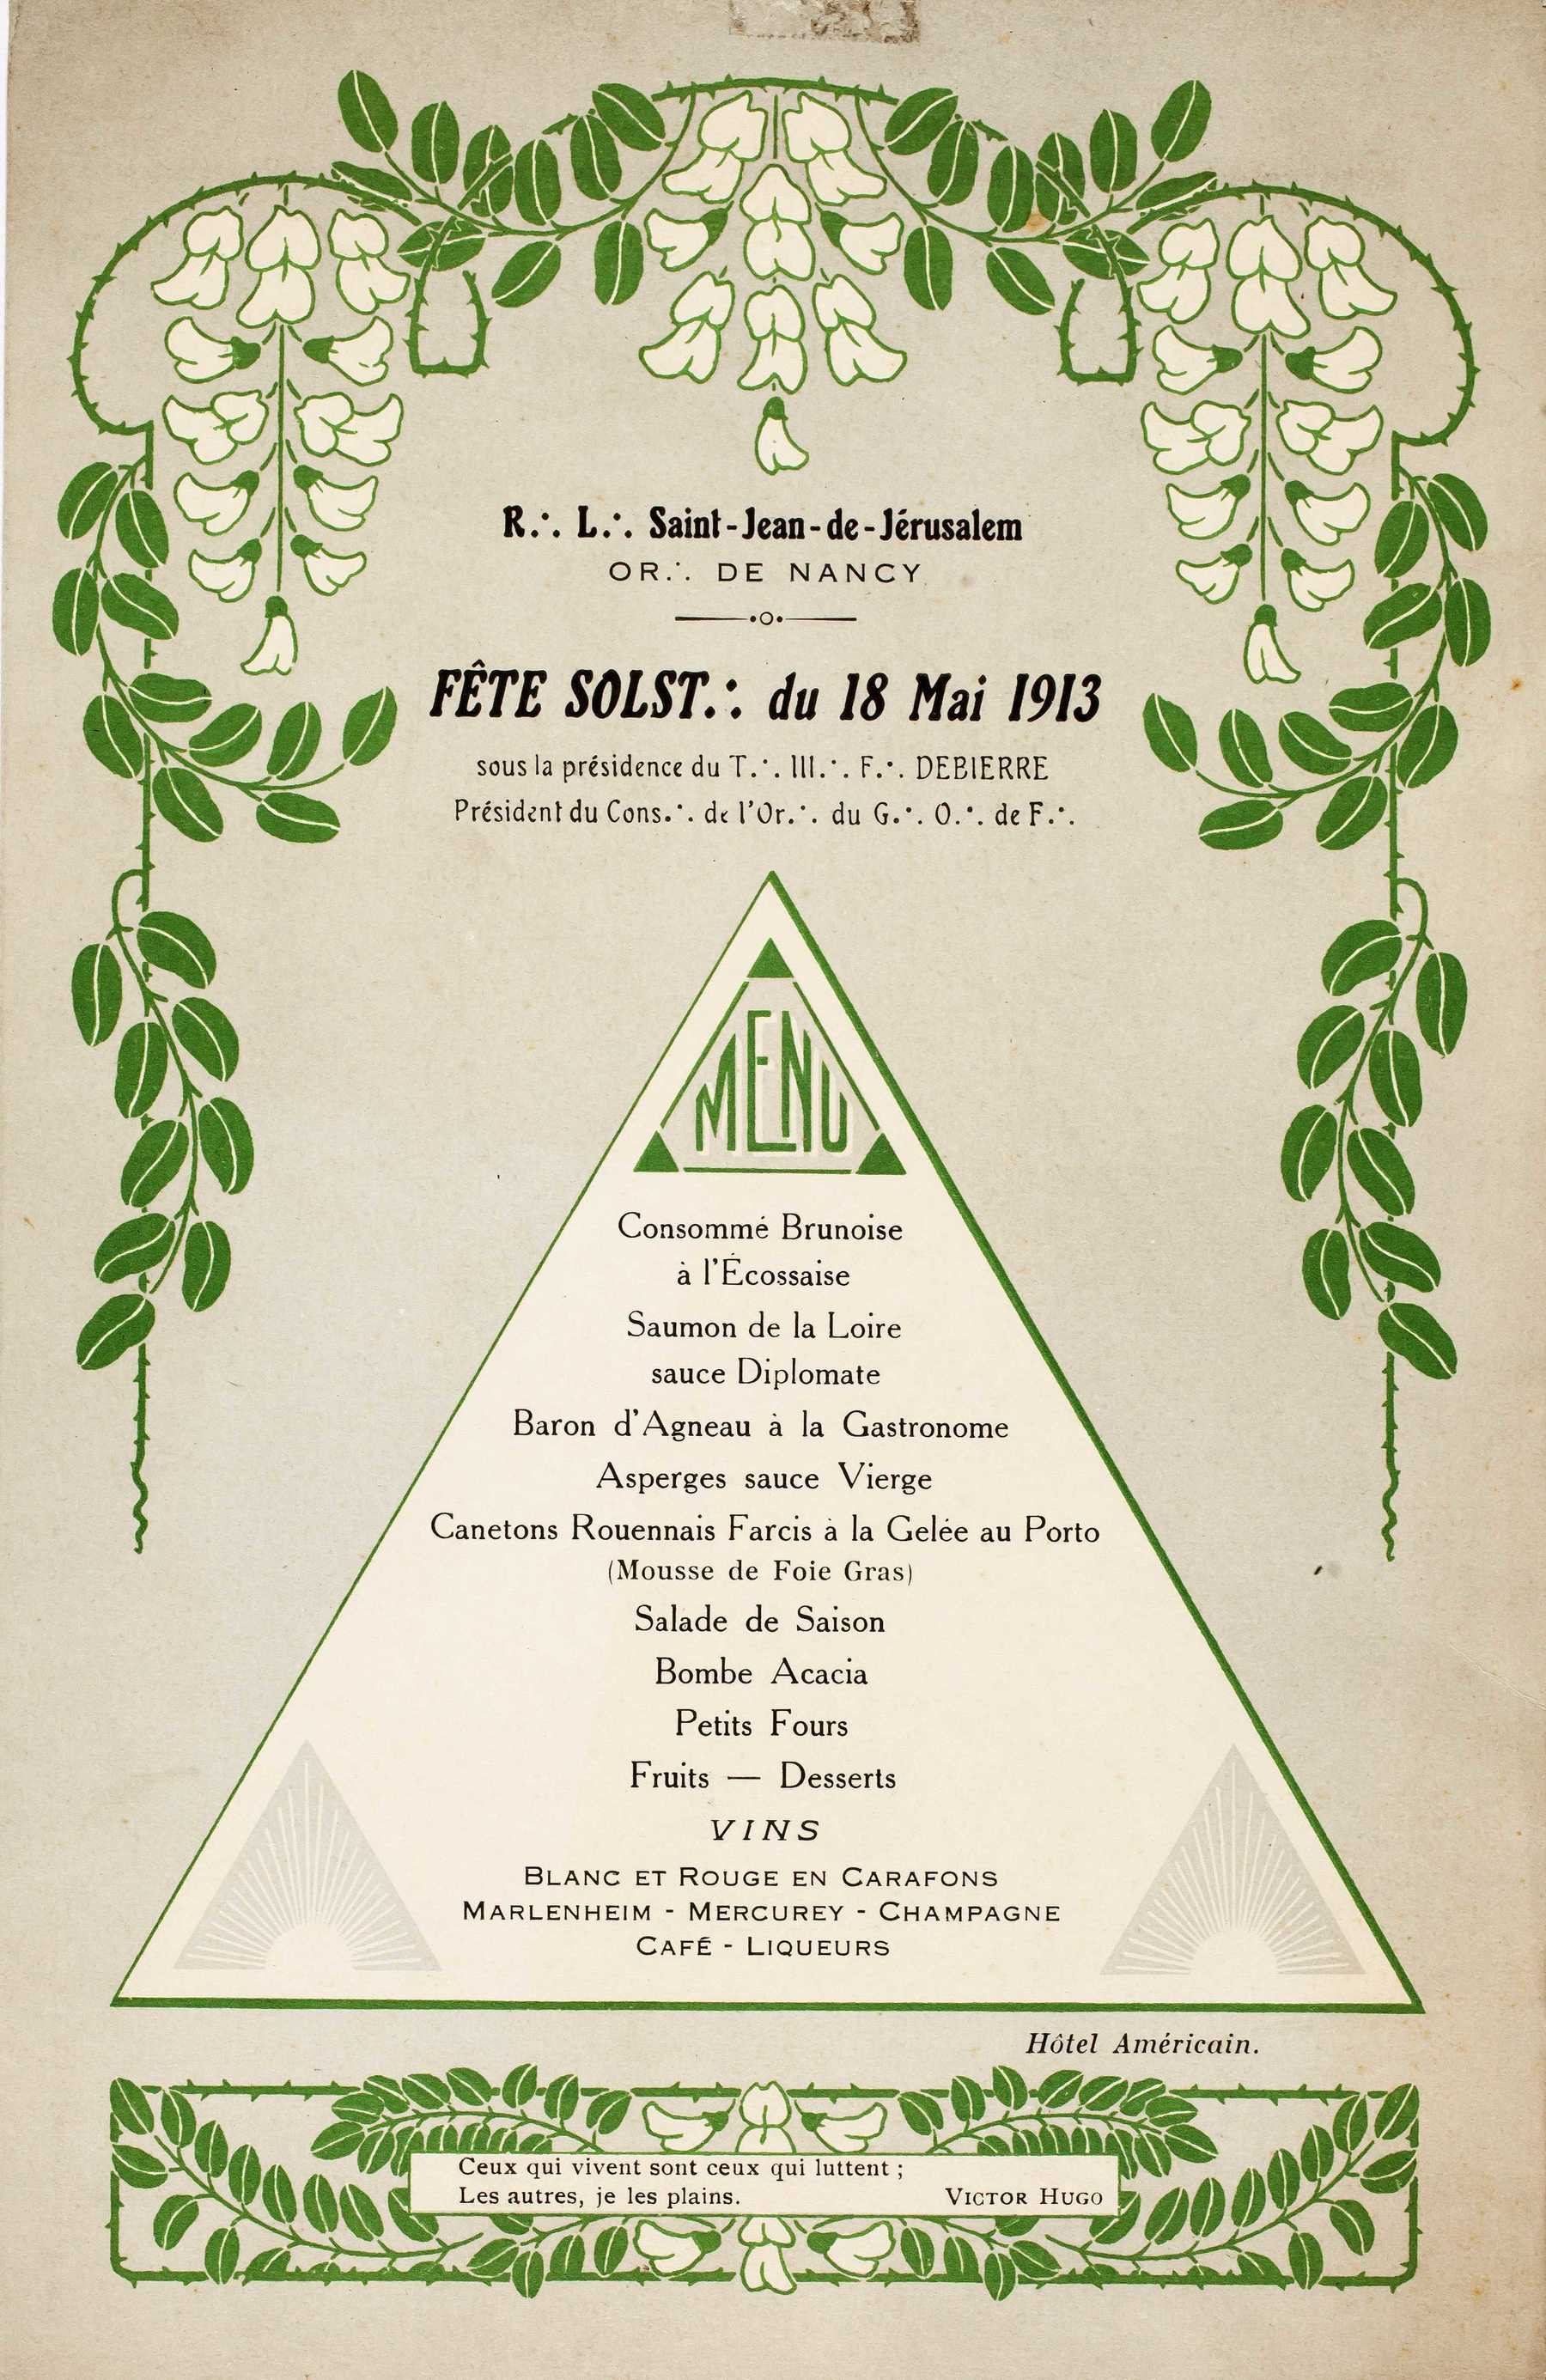 Contenu du Menu du 18 Mai 1913